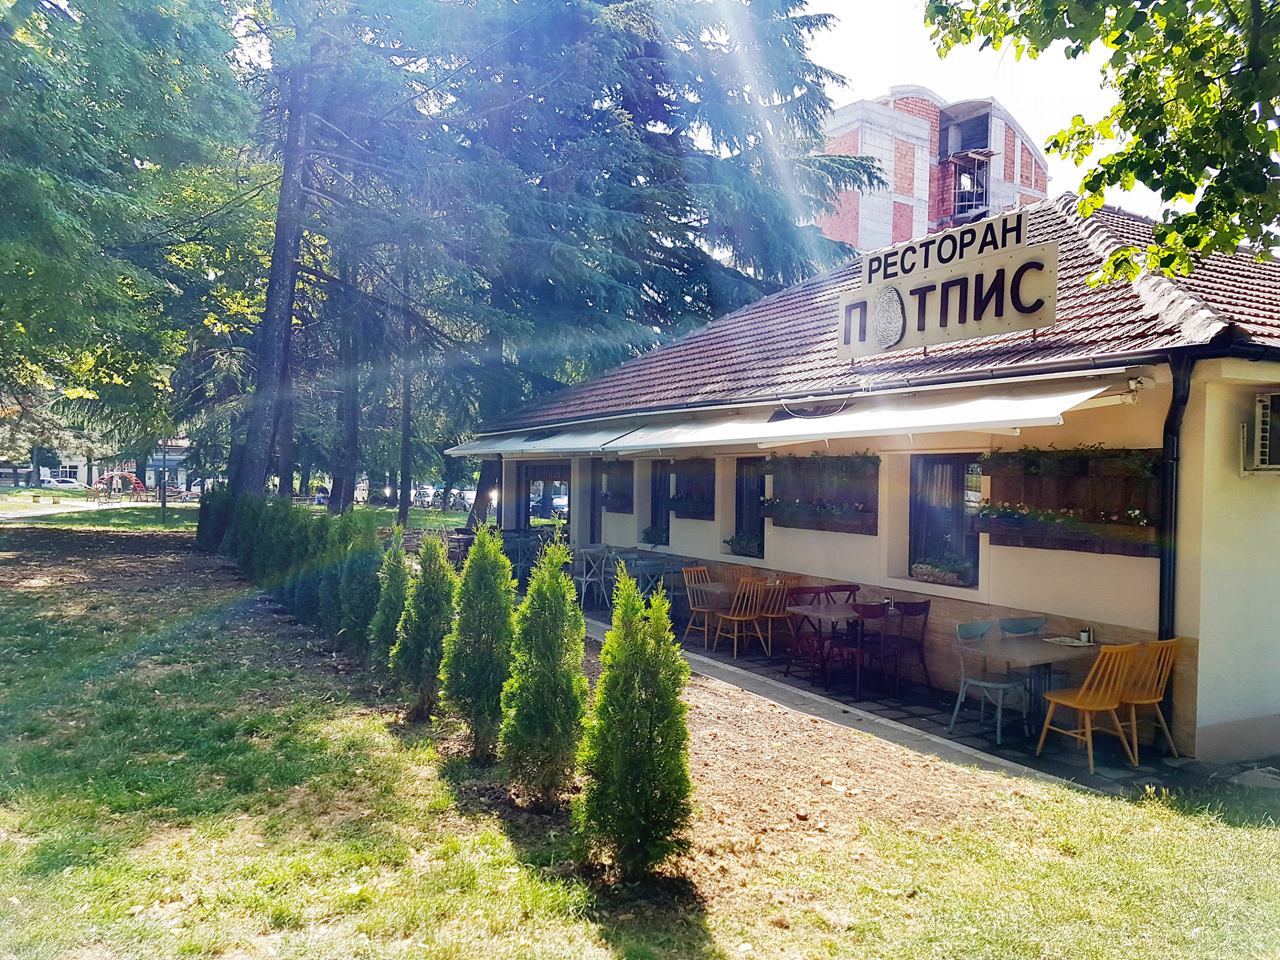 POTPIS RESTAURANT Restaurants Belgrade - Photo 2